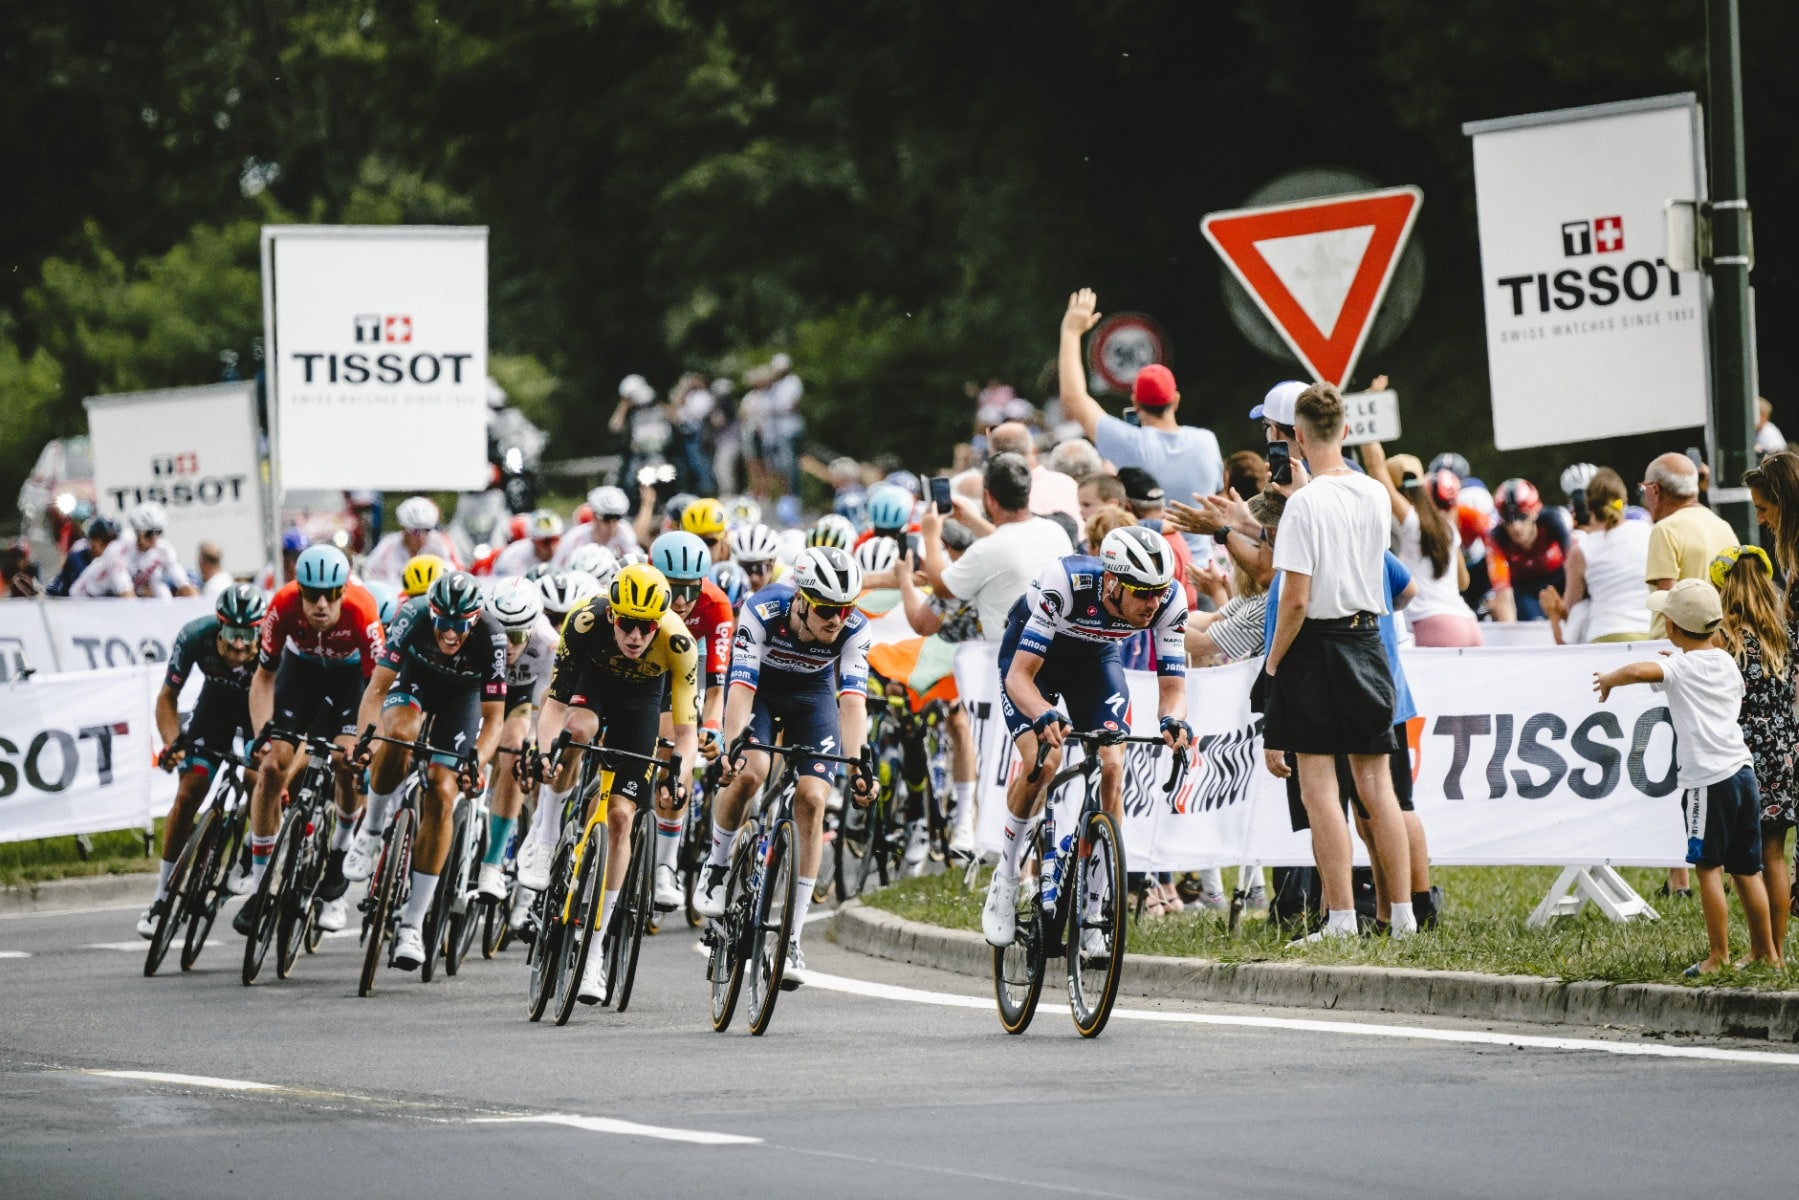 Tissot e il Tour de France: omaggio a una storia di cronometraggio e innovazione